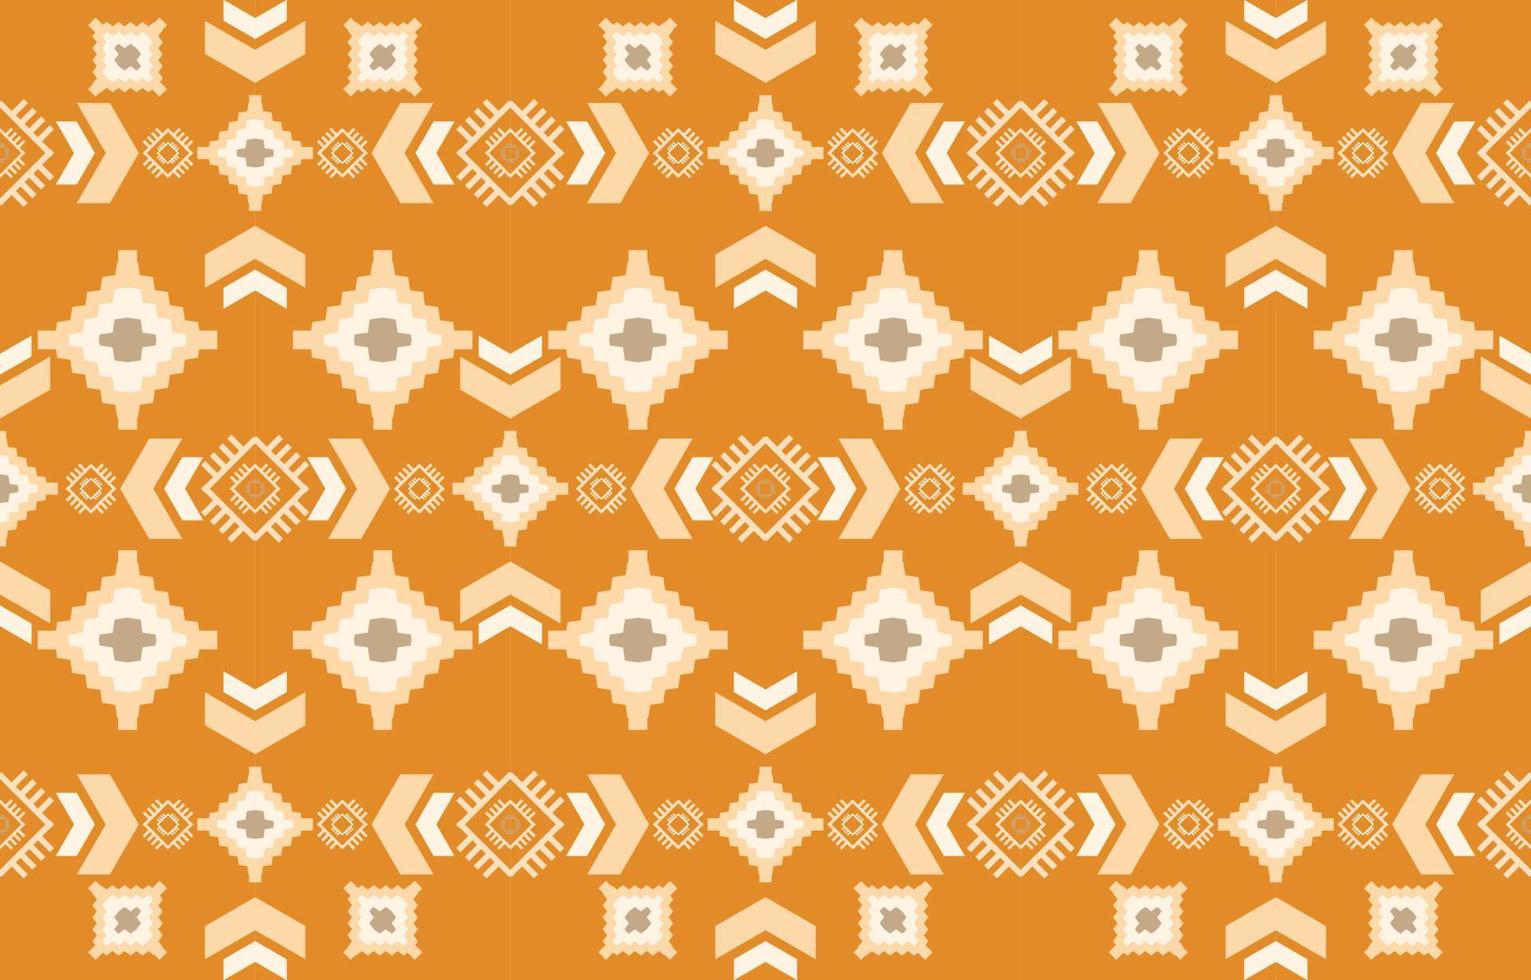 padrão sem emenda de tecido nativo americano navajo, fundo tradicional étnico tribal geométrico, elementos de design, design para tapete, papel de parede, roupas, tapete, interior, ilustração vetorial de bordado. vetor